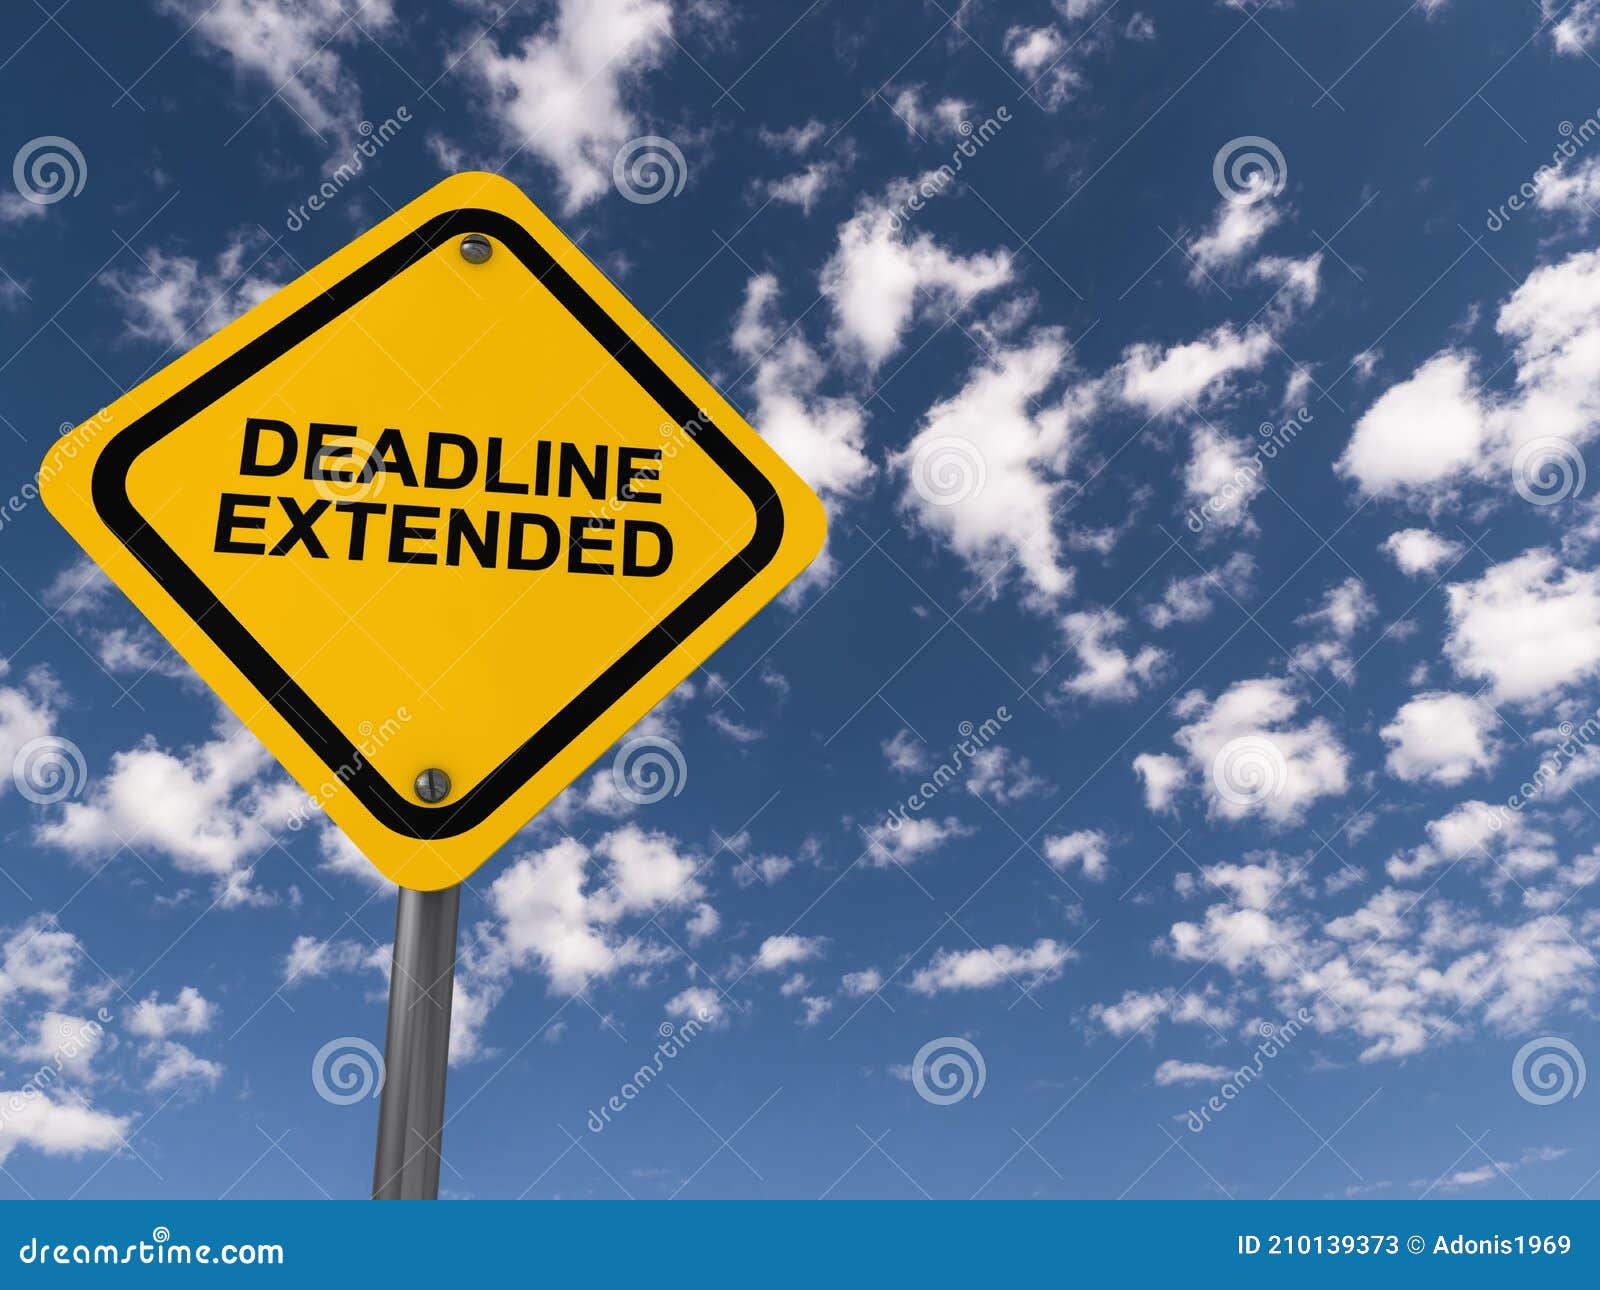 deadline extended traffic sign